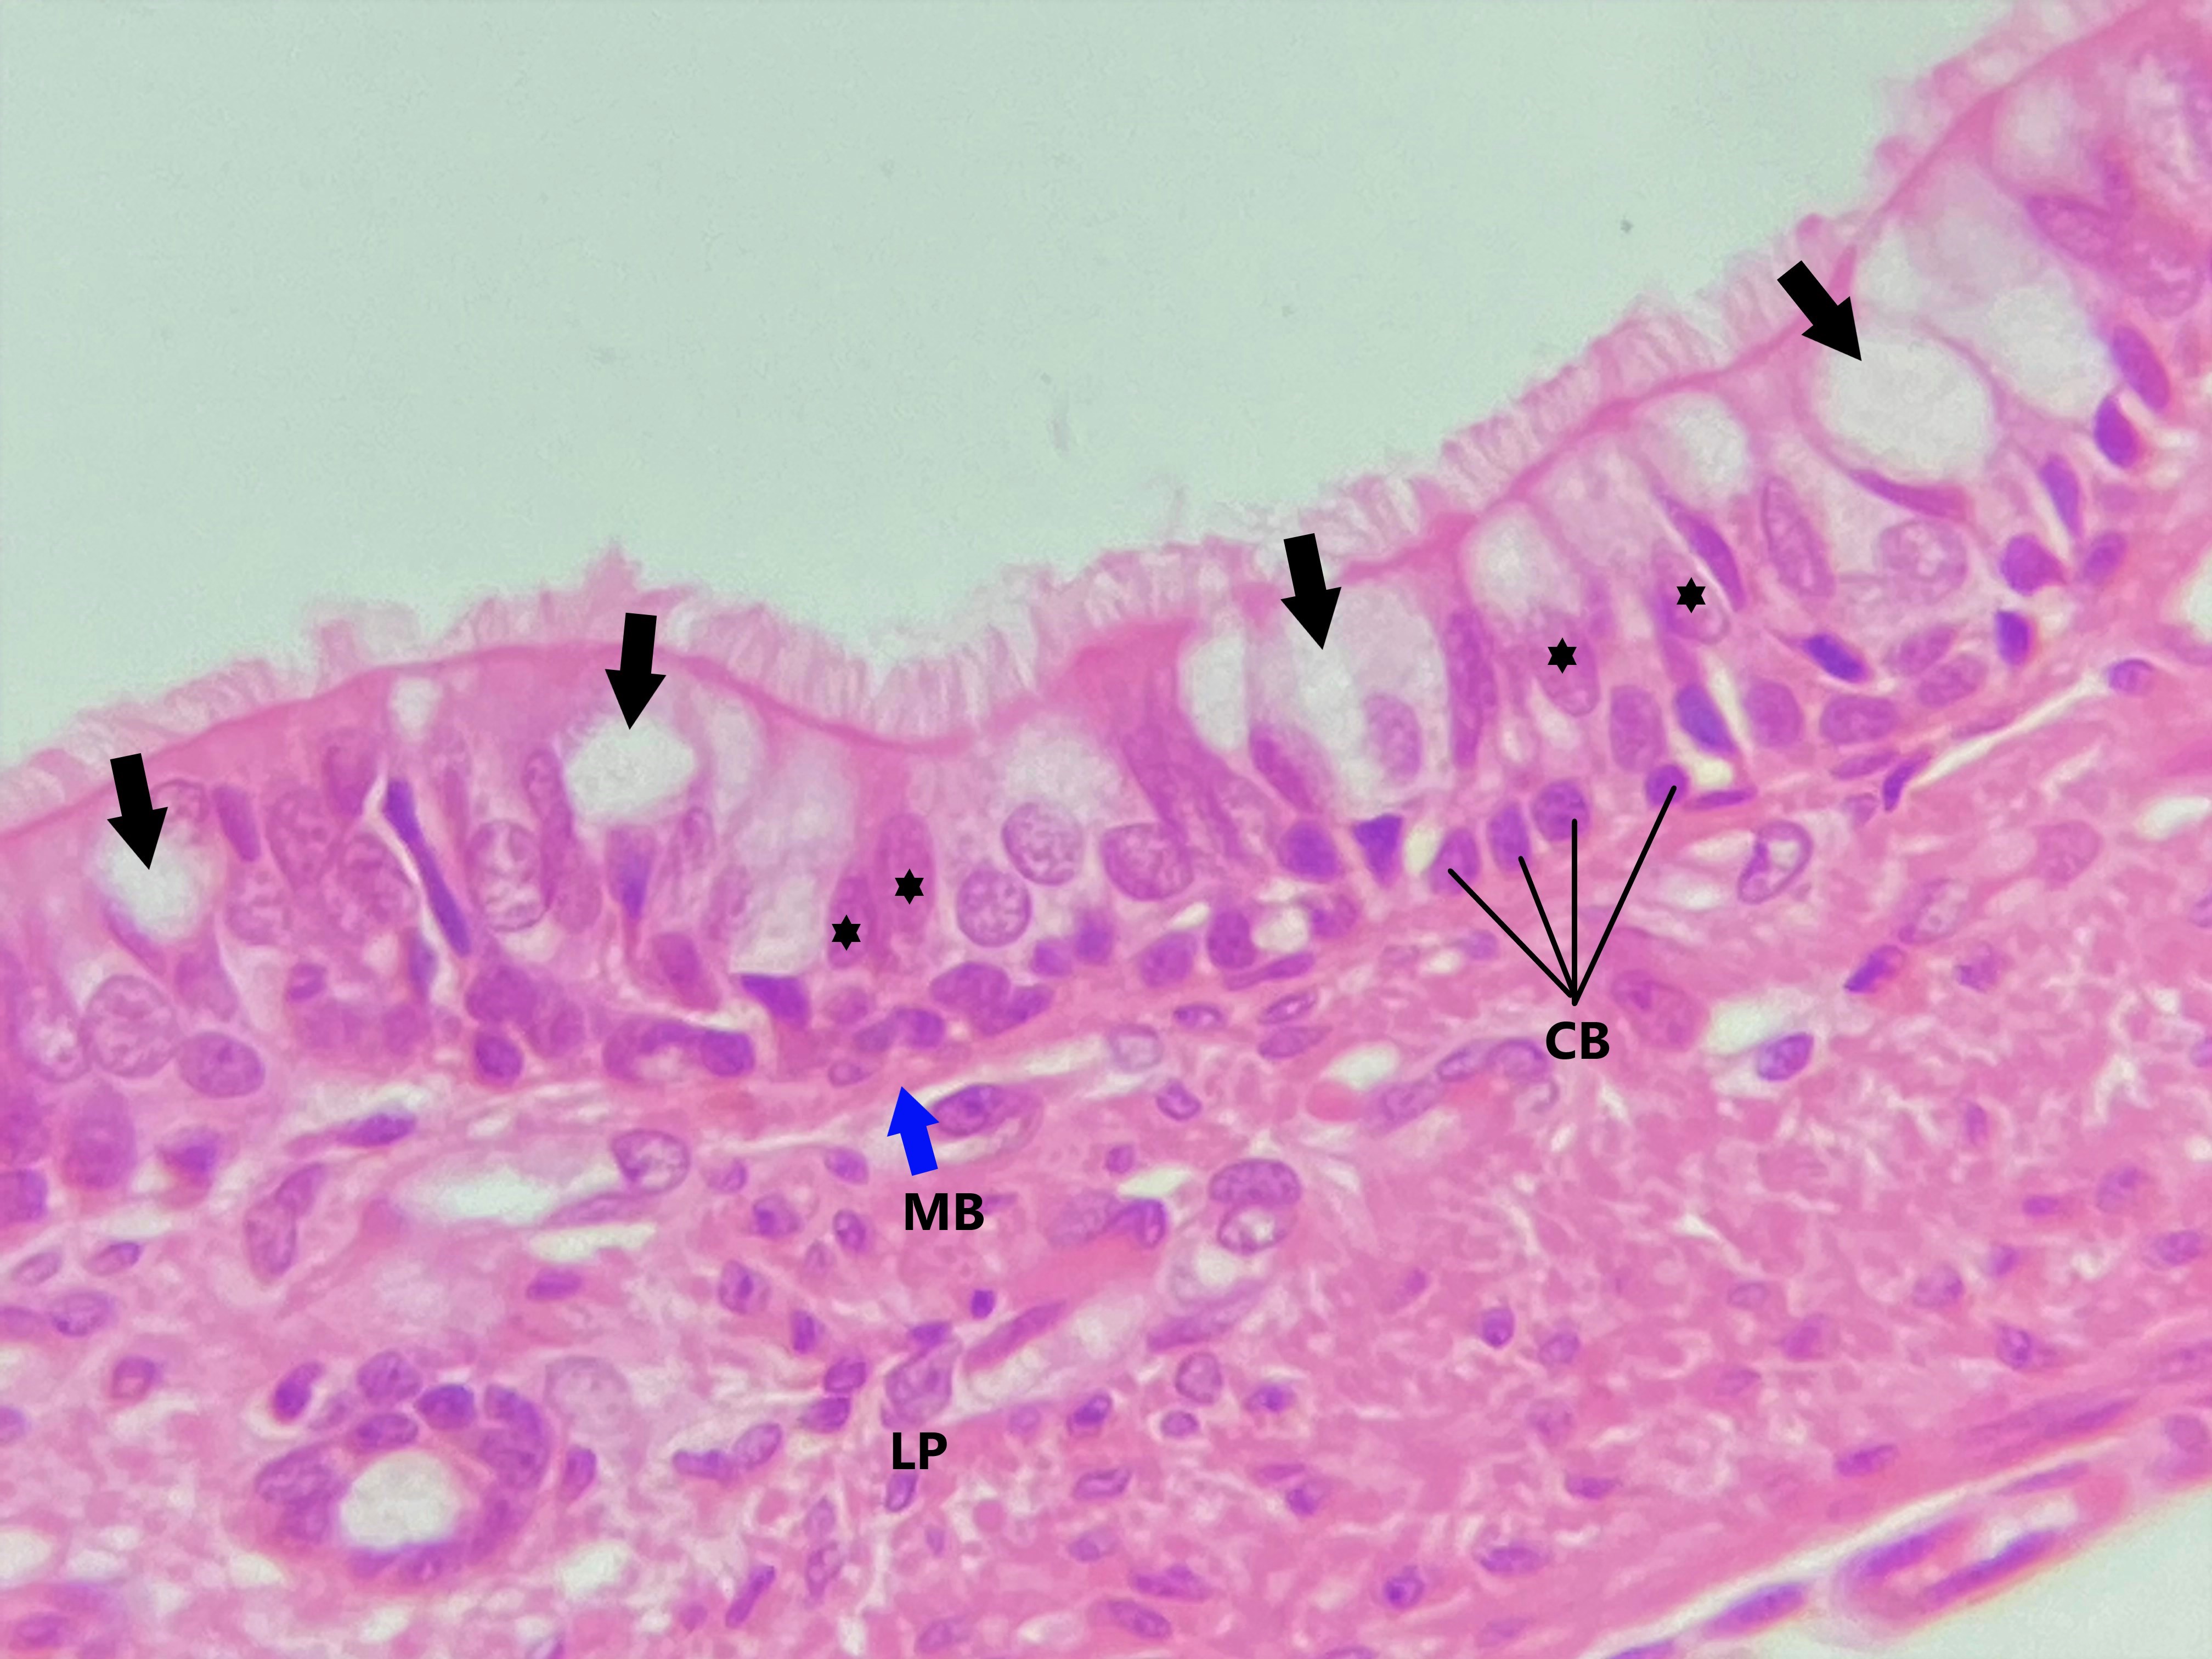 Lâmina: traqueia (H&E - Aumento: 400x). O principal tipo celular é a célula colunar ciliada, que possui núcleo de formato ovoide (asteriscos).  Entre as células colunares há as células caliciformes (setas), produtoras de muco e que aparecem palidamente coradas pela técnica H&E.  Os núcleos pequenos e arredondados na região basal do epitélio são das células basais (CB), que são células tronco responsáveis pela renovação do epitélio.  Embora apresentem núcleos em diferentes alturas, todas as células repousam sobre a membrana basal (MB).   Trata-se, portanto, de um epitélio simples, embora sua aparência sugira o contrário.